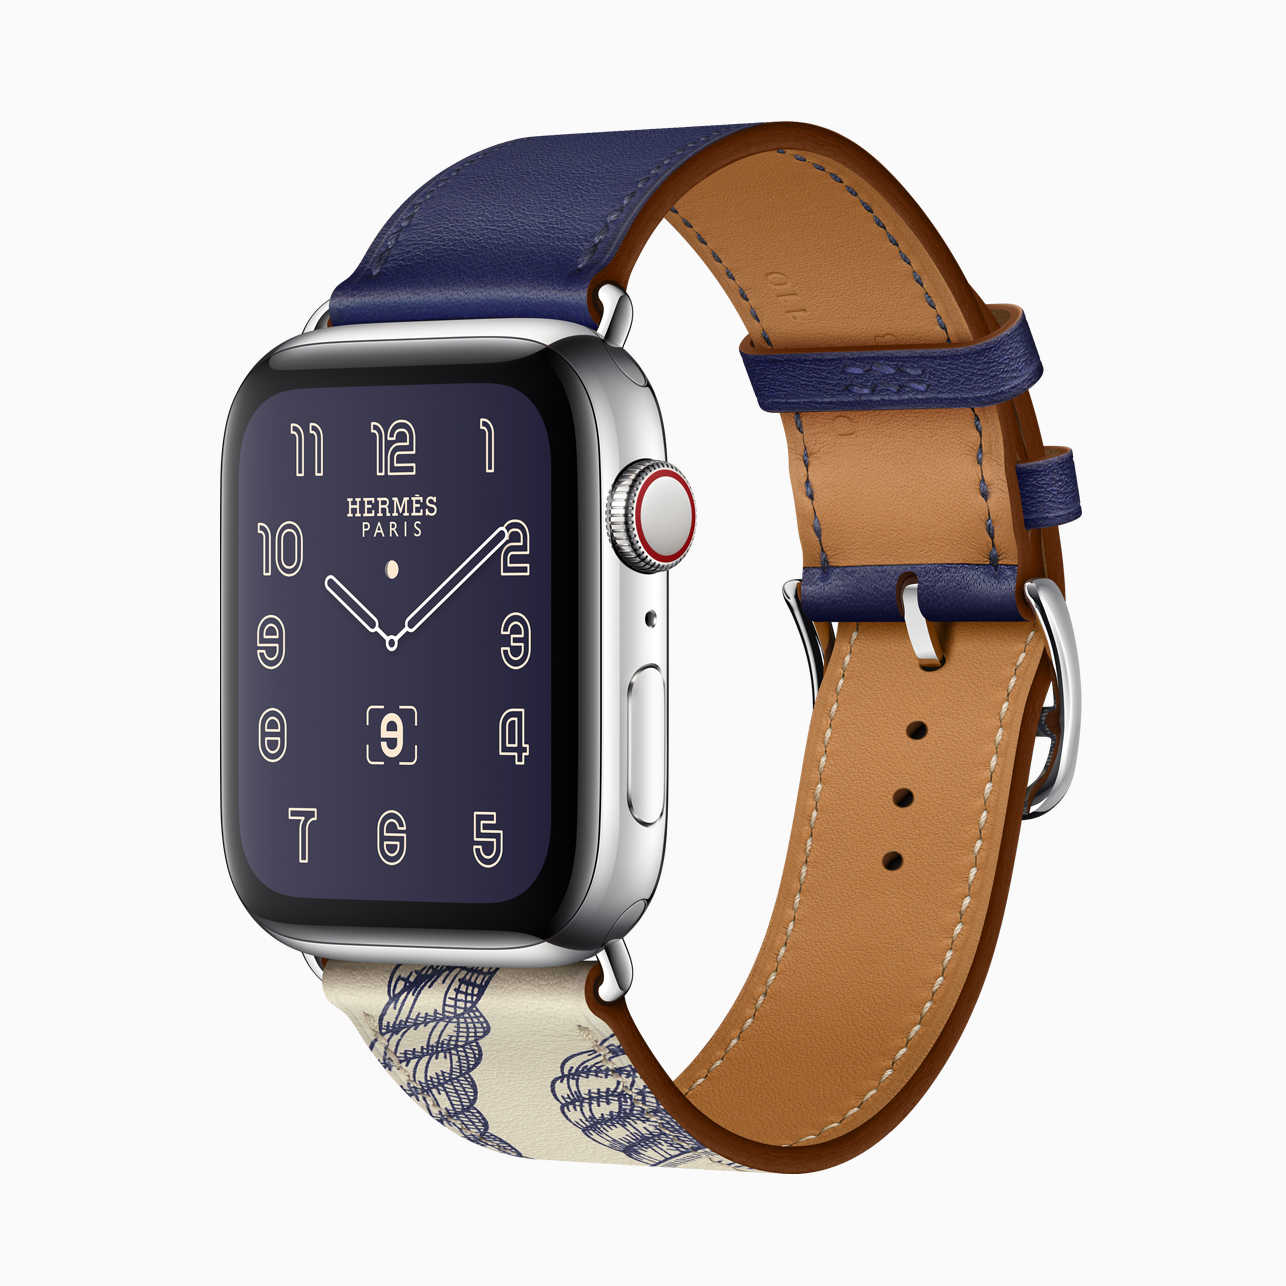 Apple Watch Series 5 - возможности и функции одних из самых популярных смарт-часов